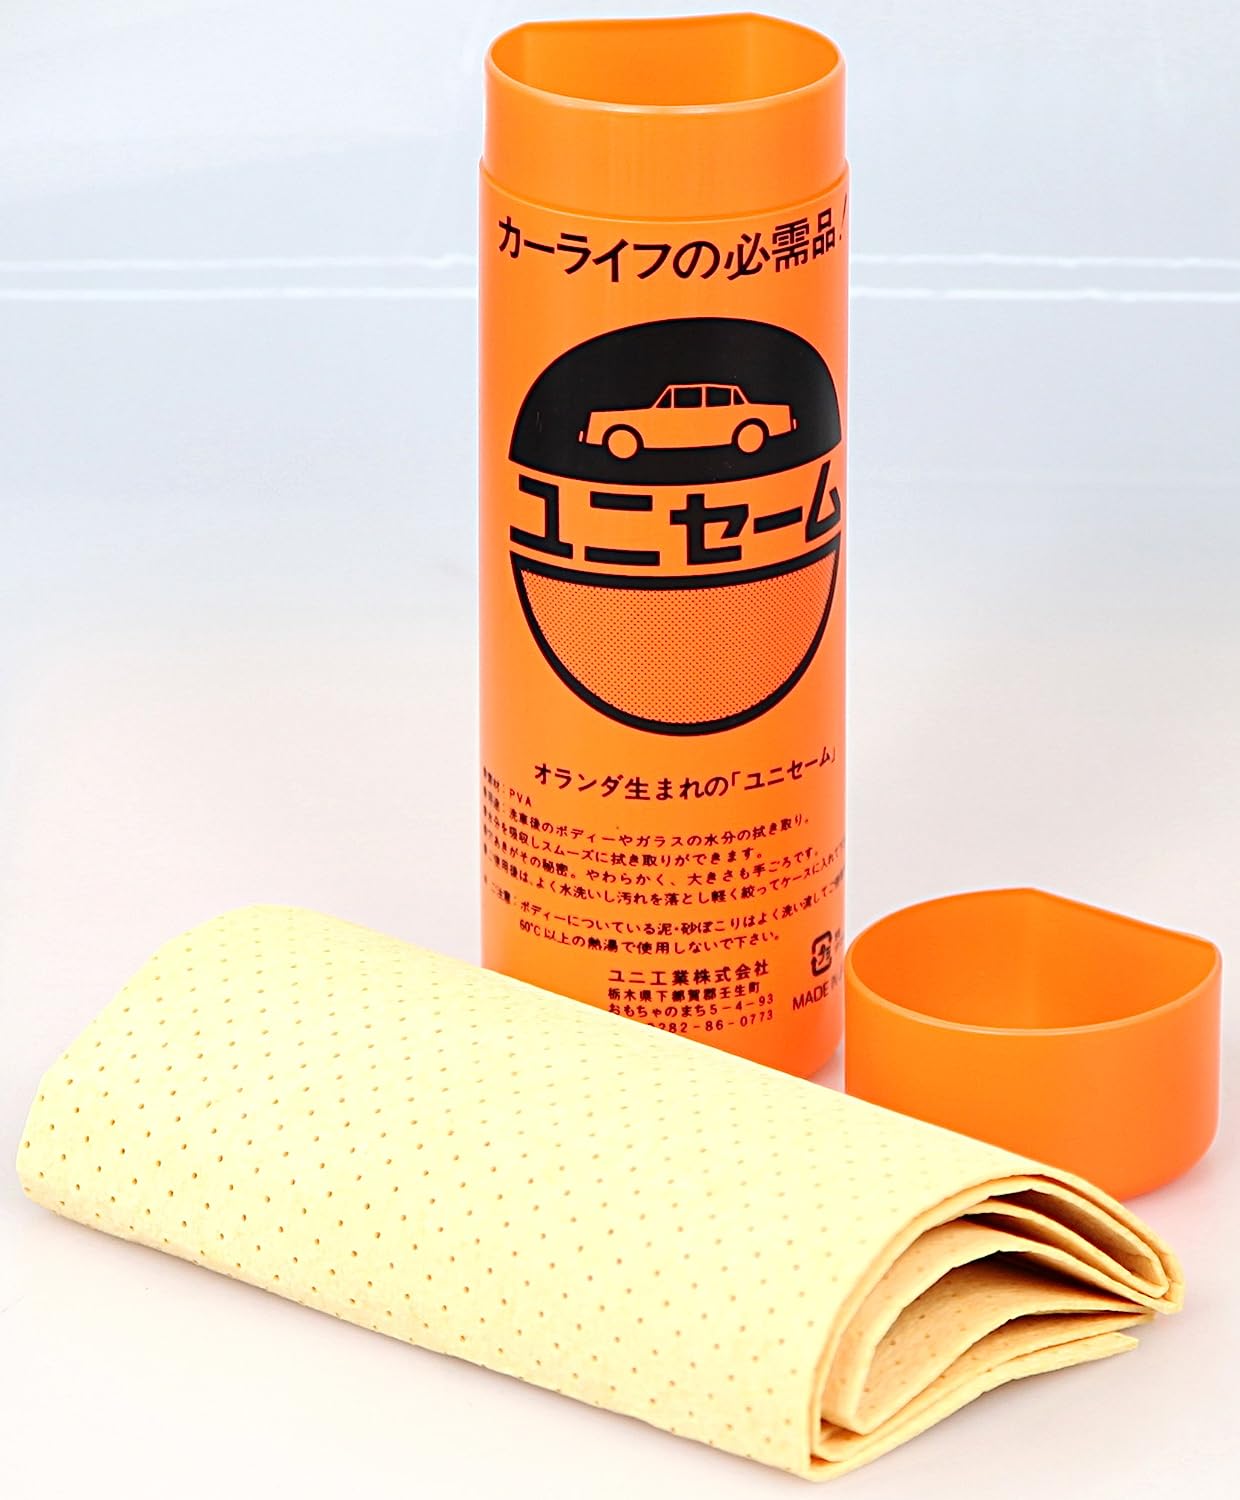 日本製Uni ユニ 合成セーム革 ユニセーム [セーム革単体] 洗車、ケミカル用品